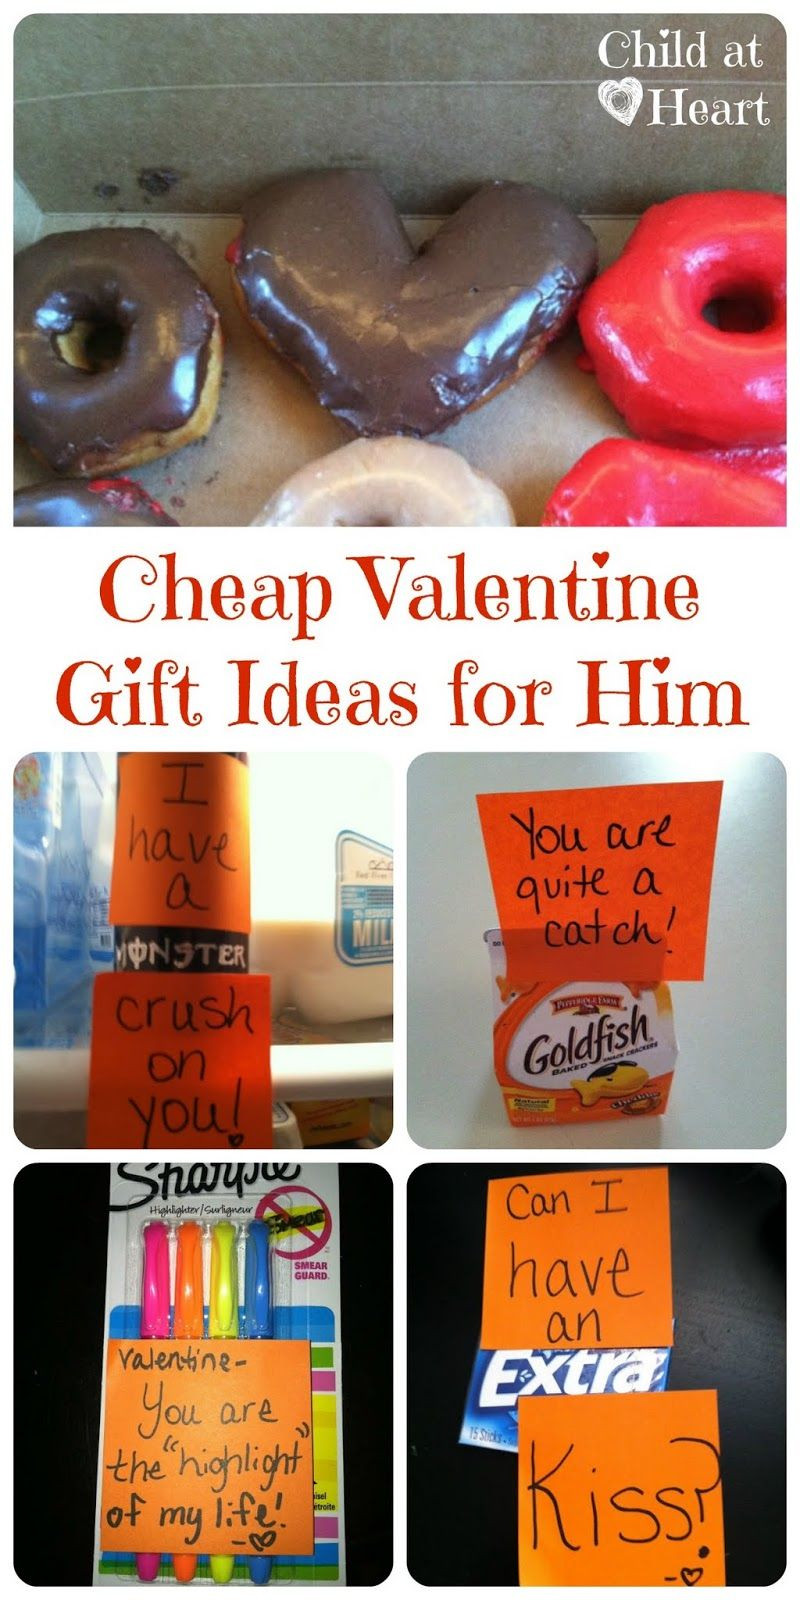 Best ideas about Valentine Gift Ideas Boyfriend
. Save or Pin Cheap Valentine Gift Ideas for Him Now.